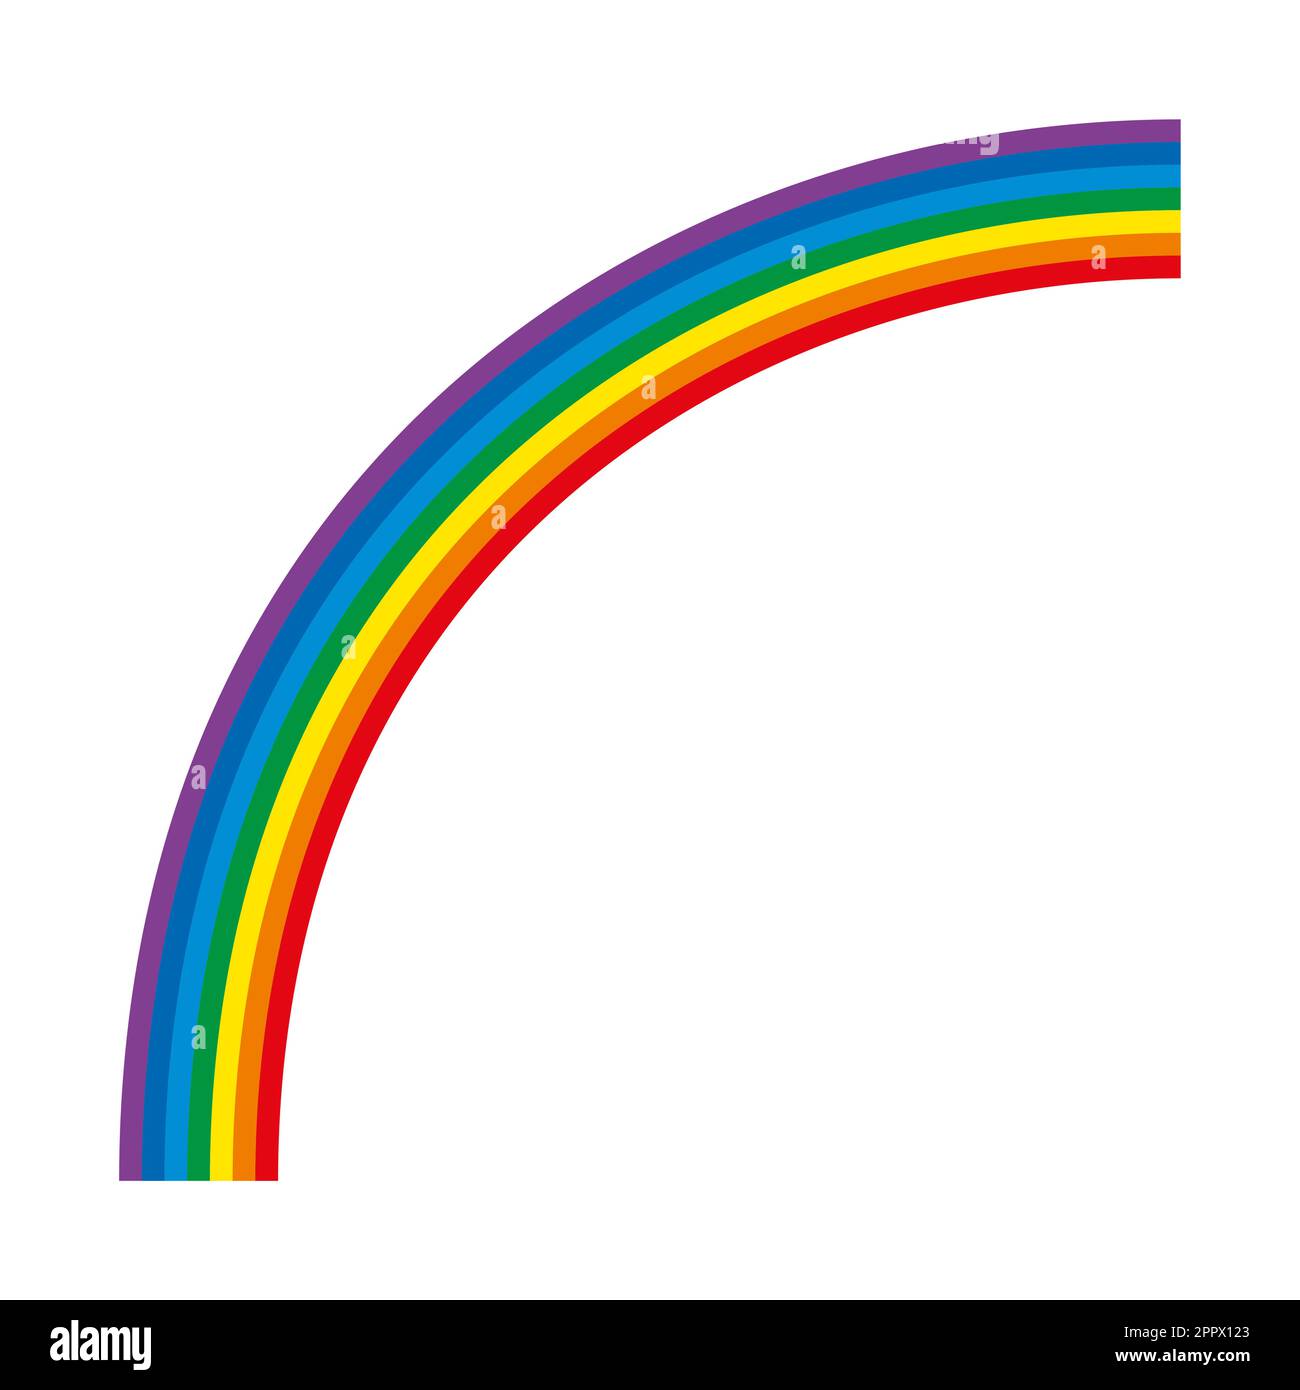 Arc-en-ciel, quart-cercle multicolore, spectre de la lumière visible Illustration de Vecteur